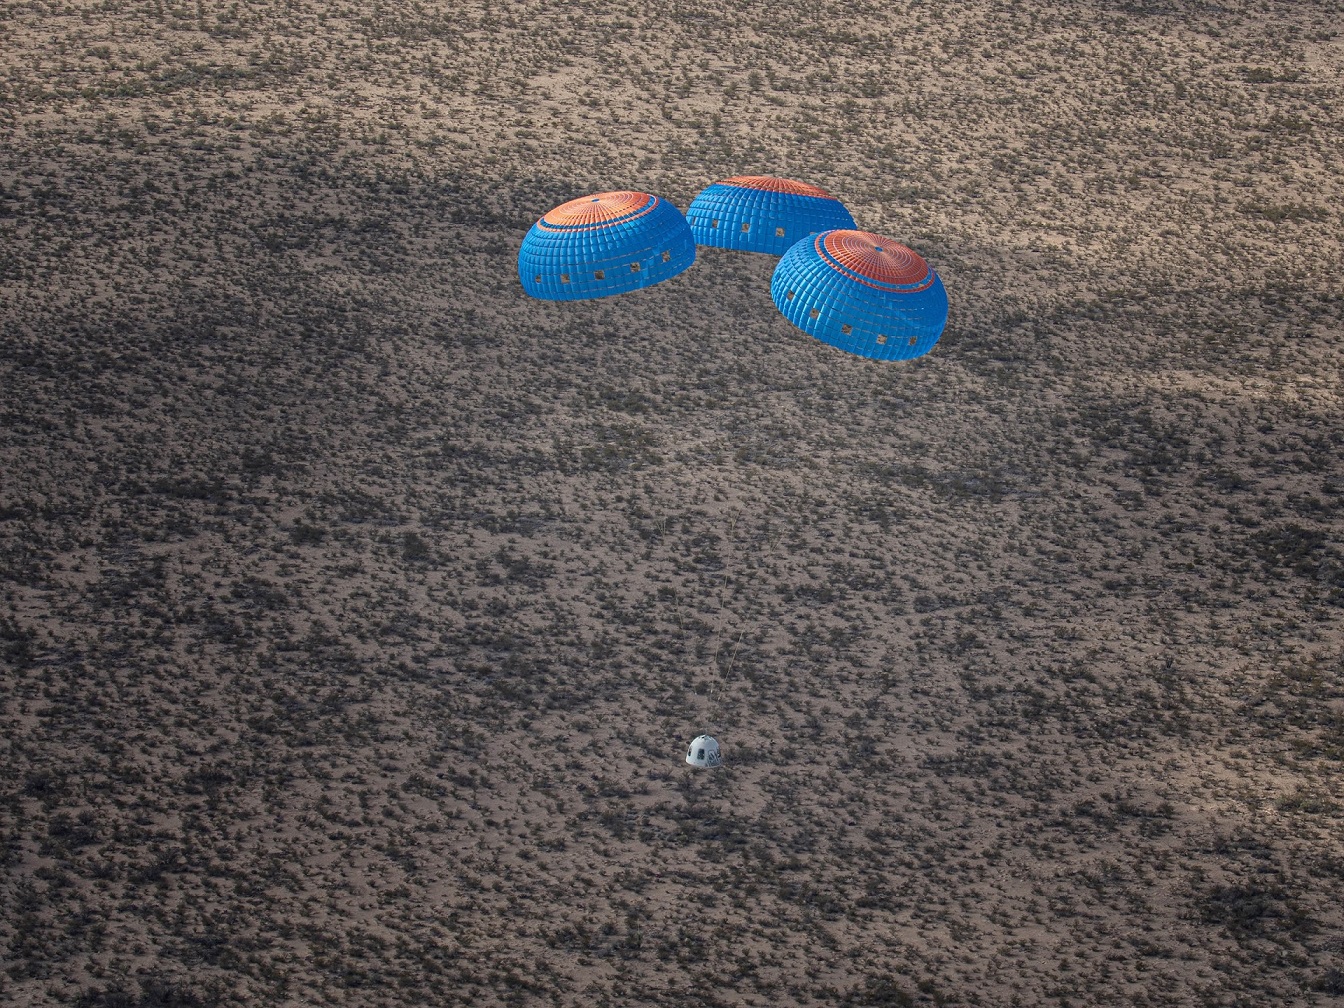 OSCAR parachuting down to surface.